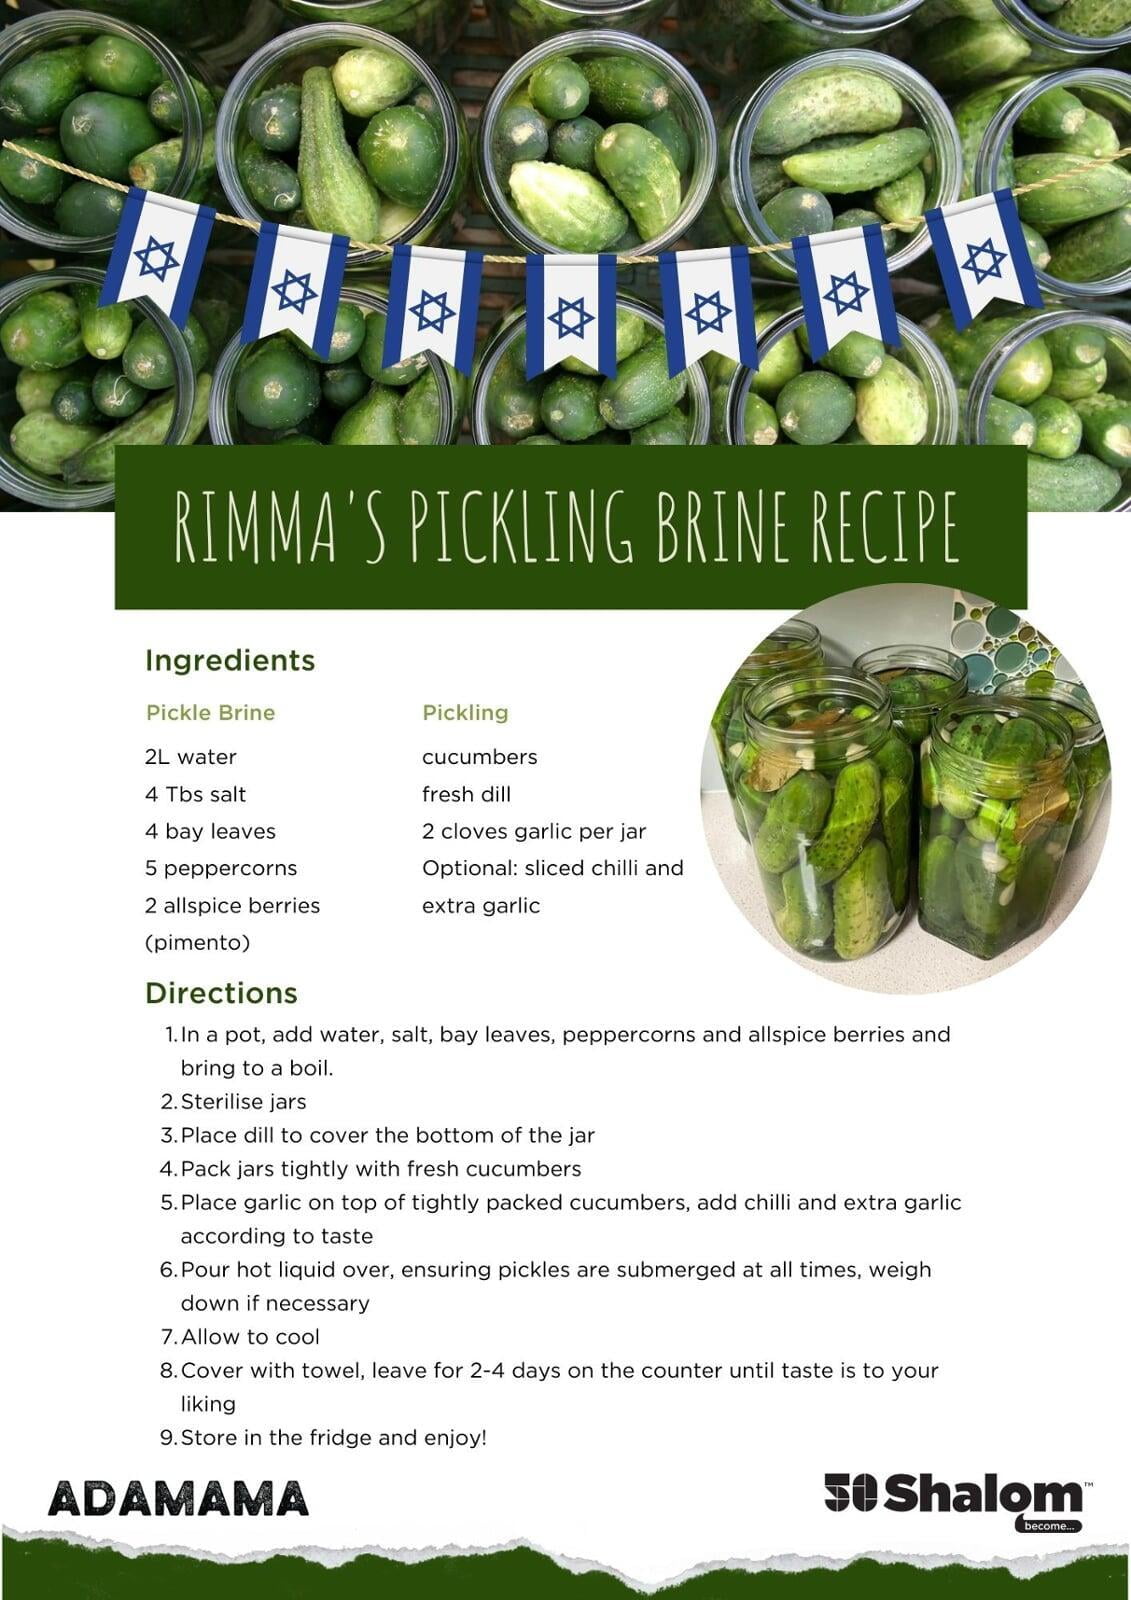 Rimma's Pickling Brine Recipe